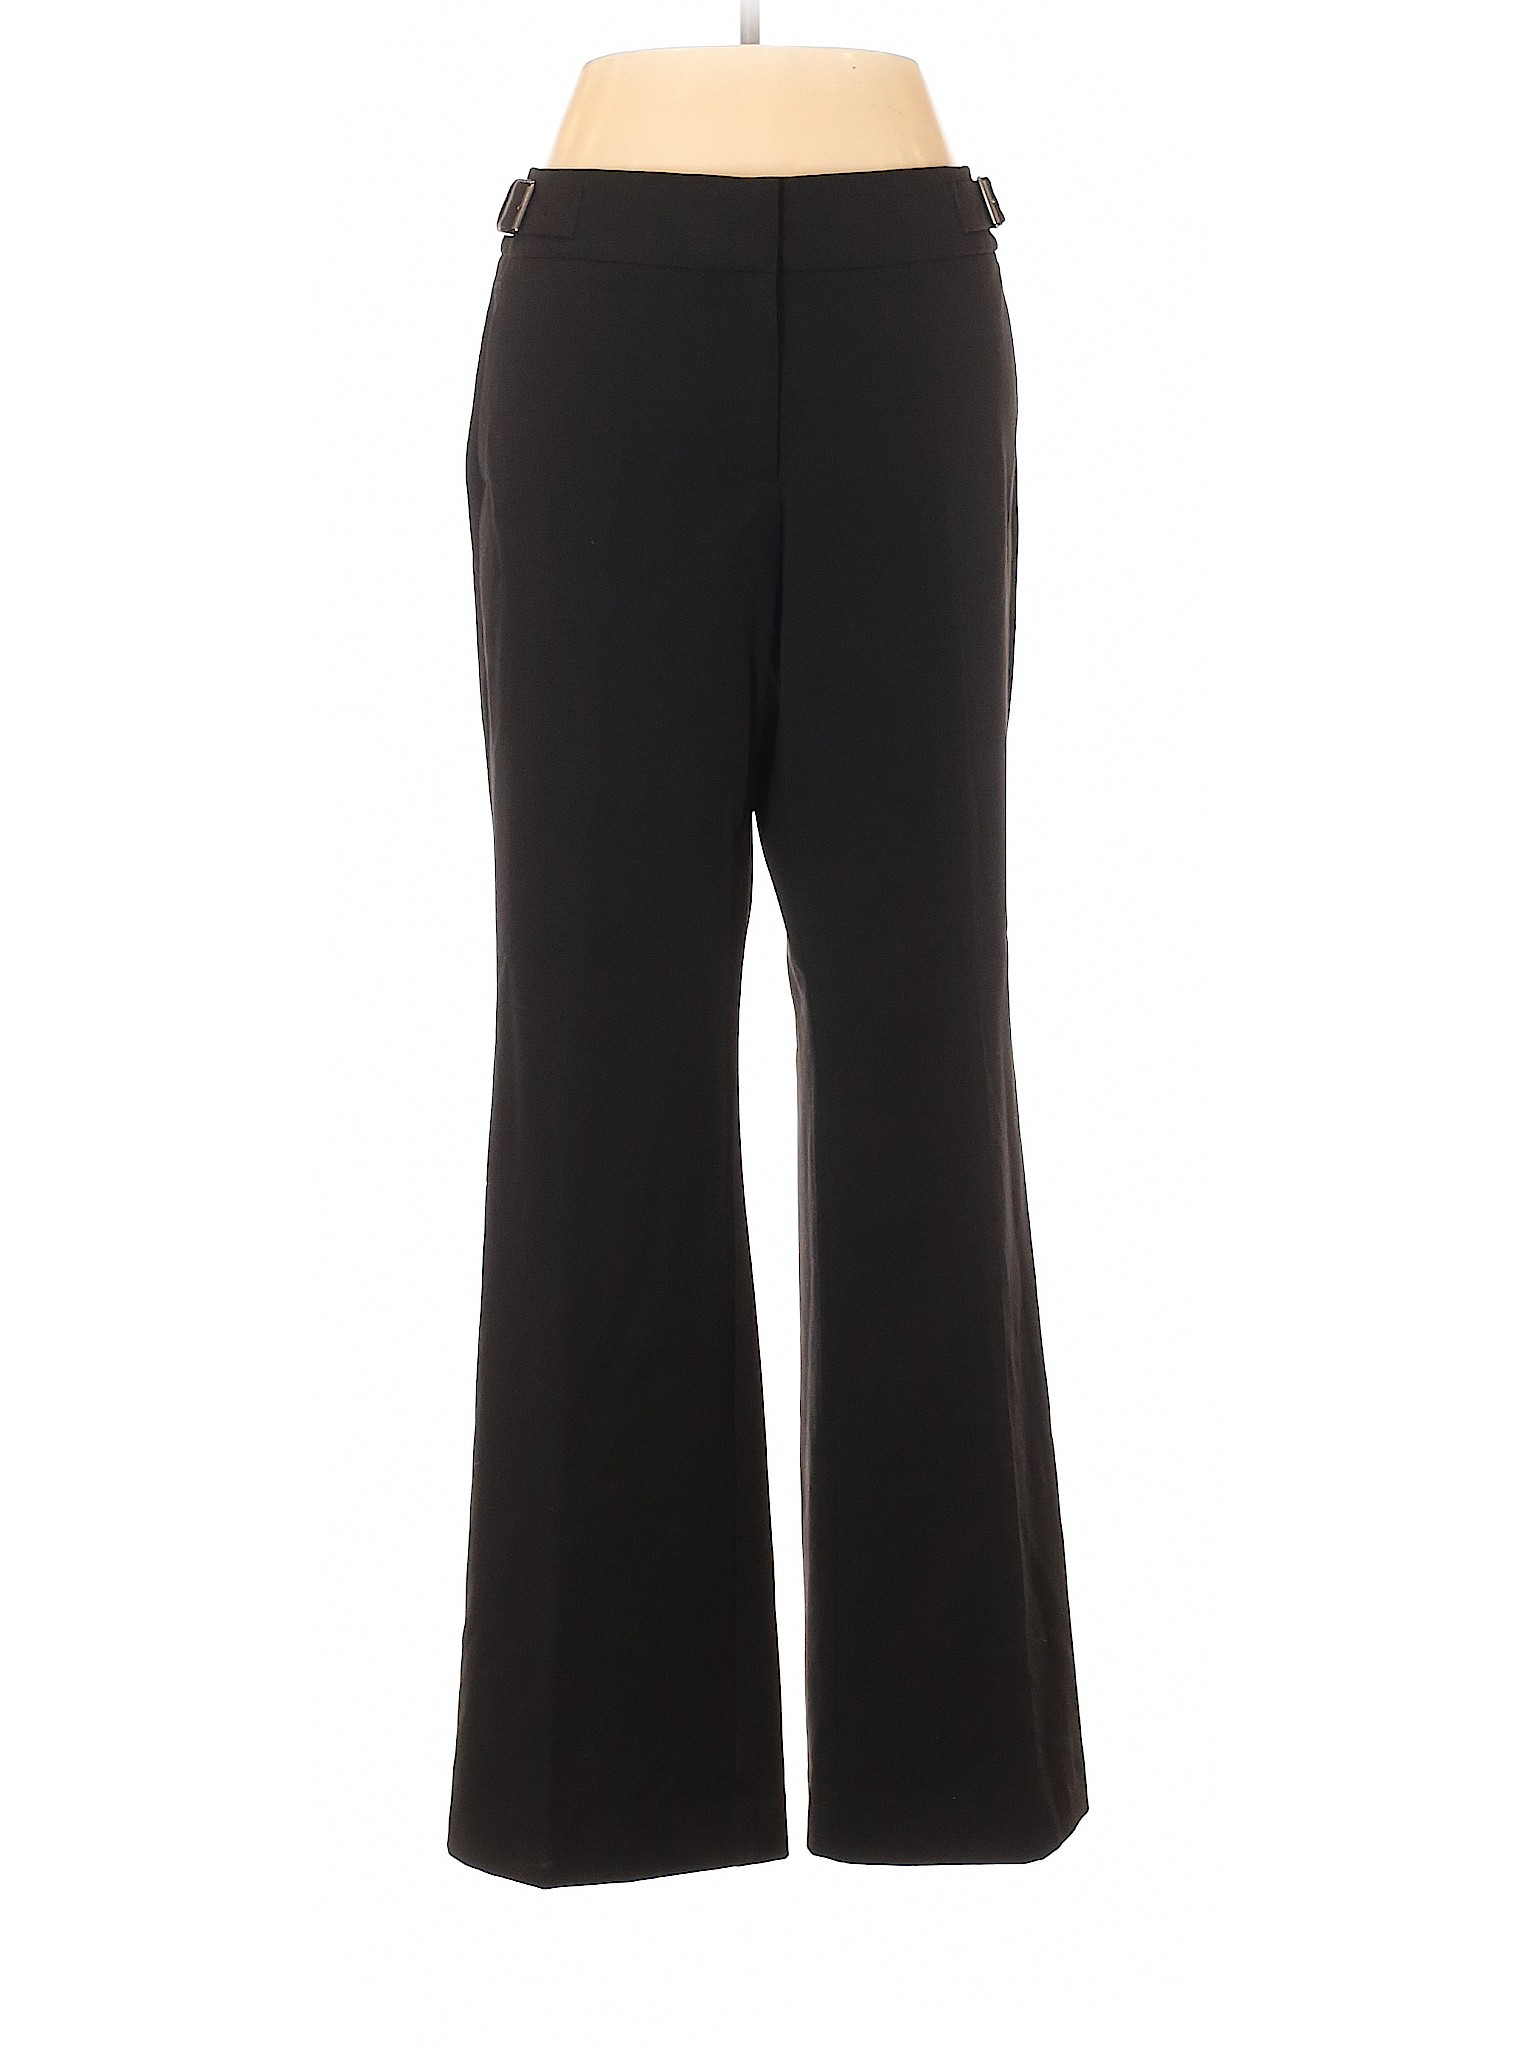 Ann Taylor LOFT Women Black Dress Pants 8 Petites | eBay